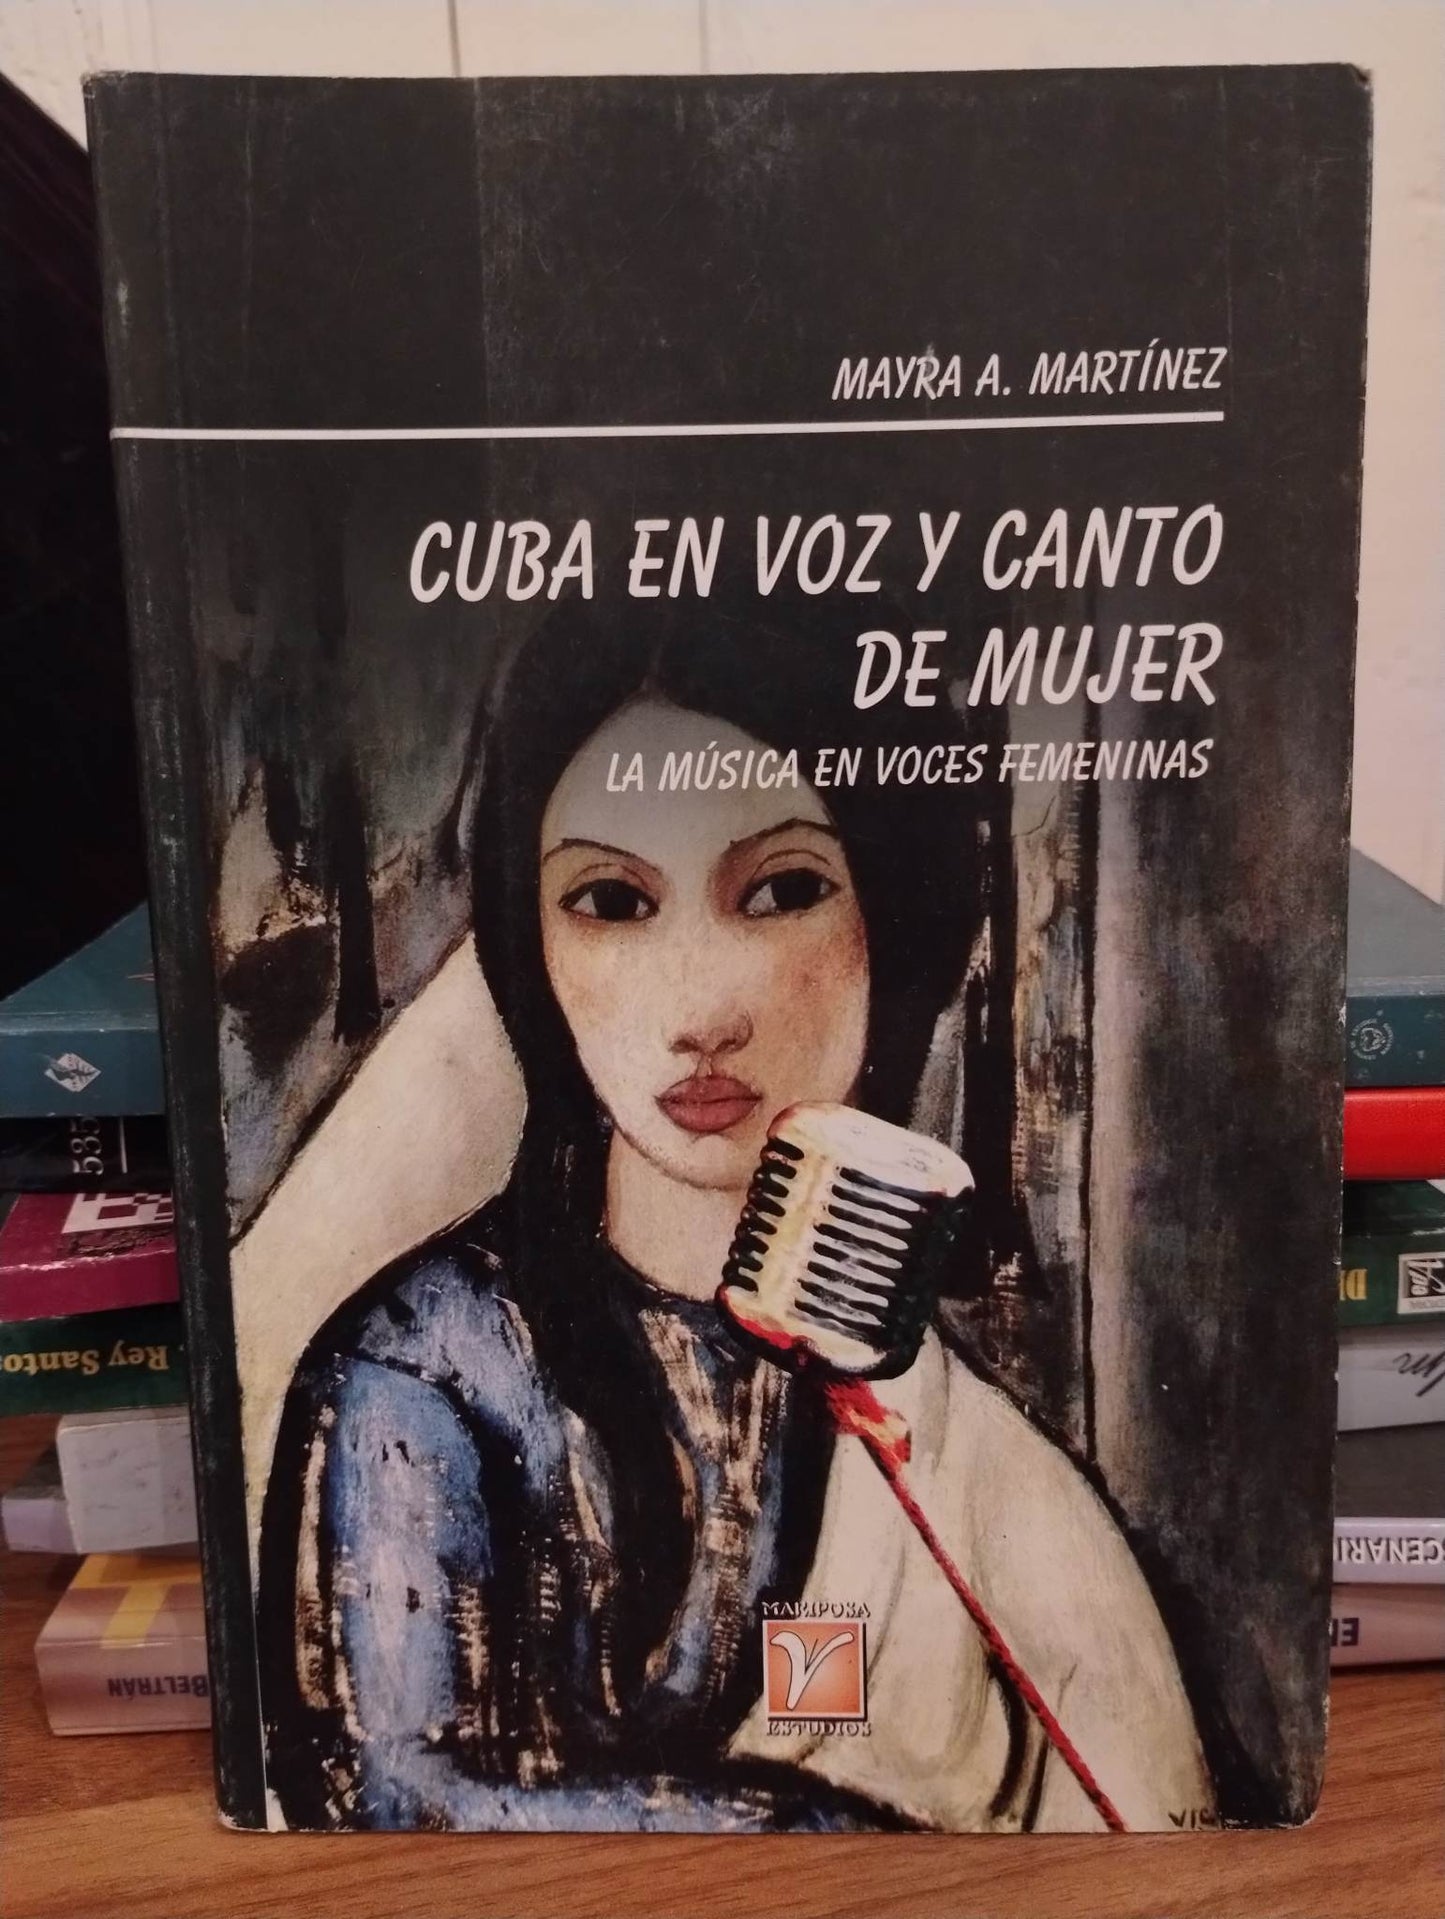 Cuba en voz y canto de mujer: la music en voces femeninas